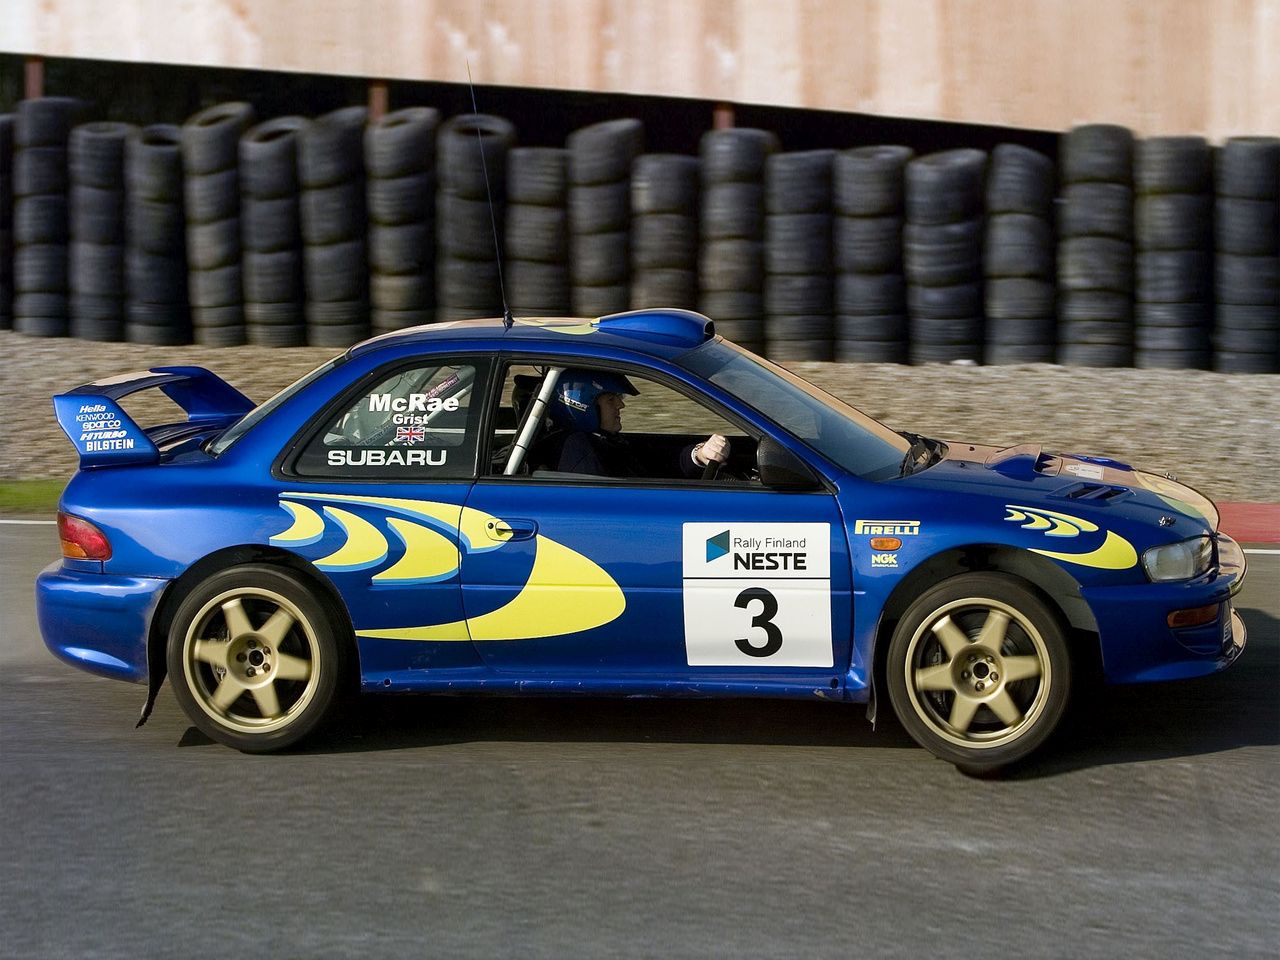 Subaru Impreza S3 WRC 97 - Blum Blum Blum Blum... 12